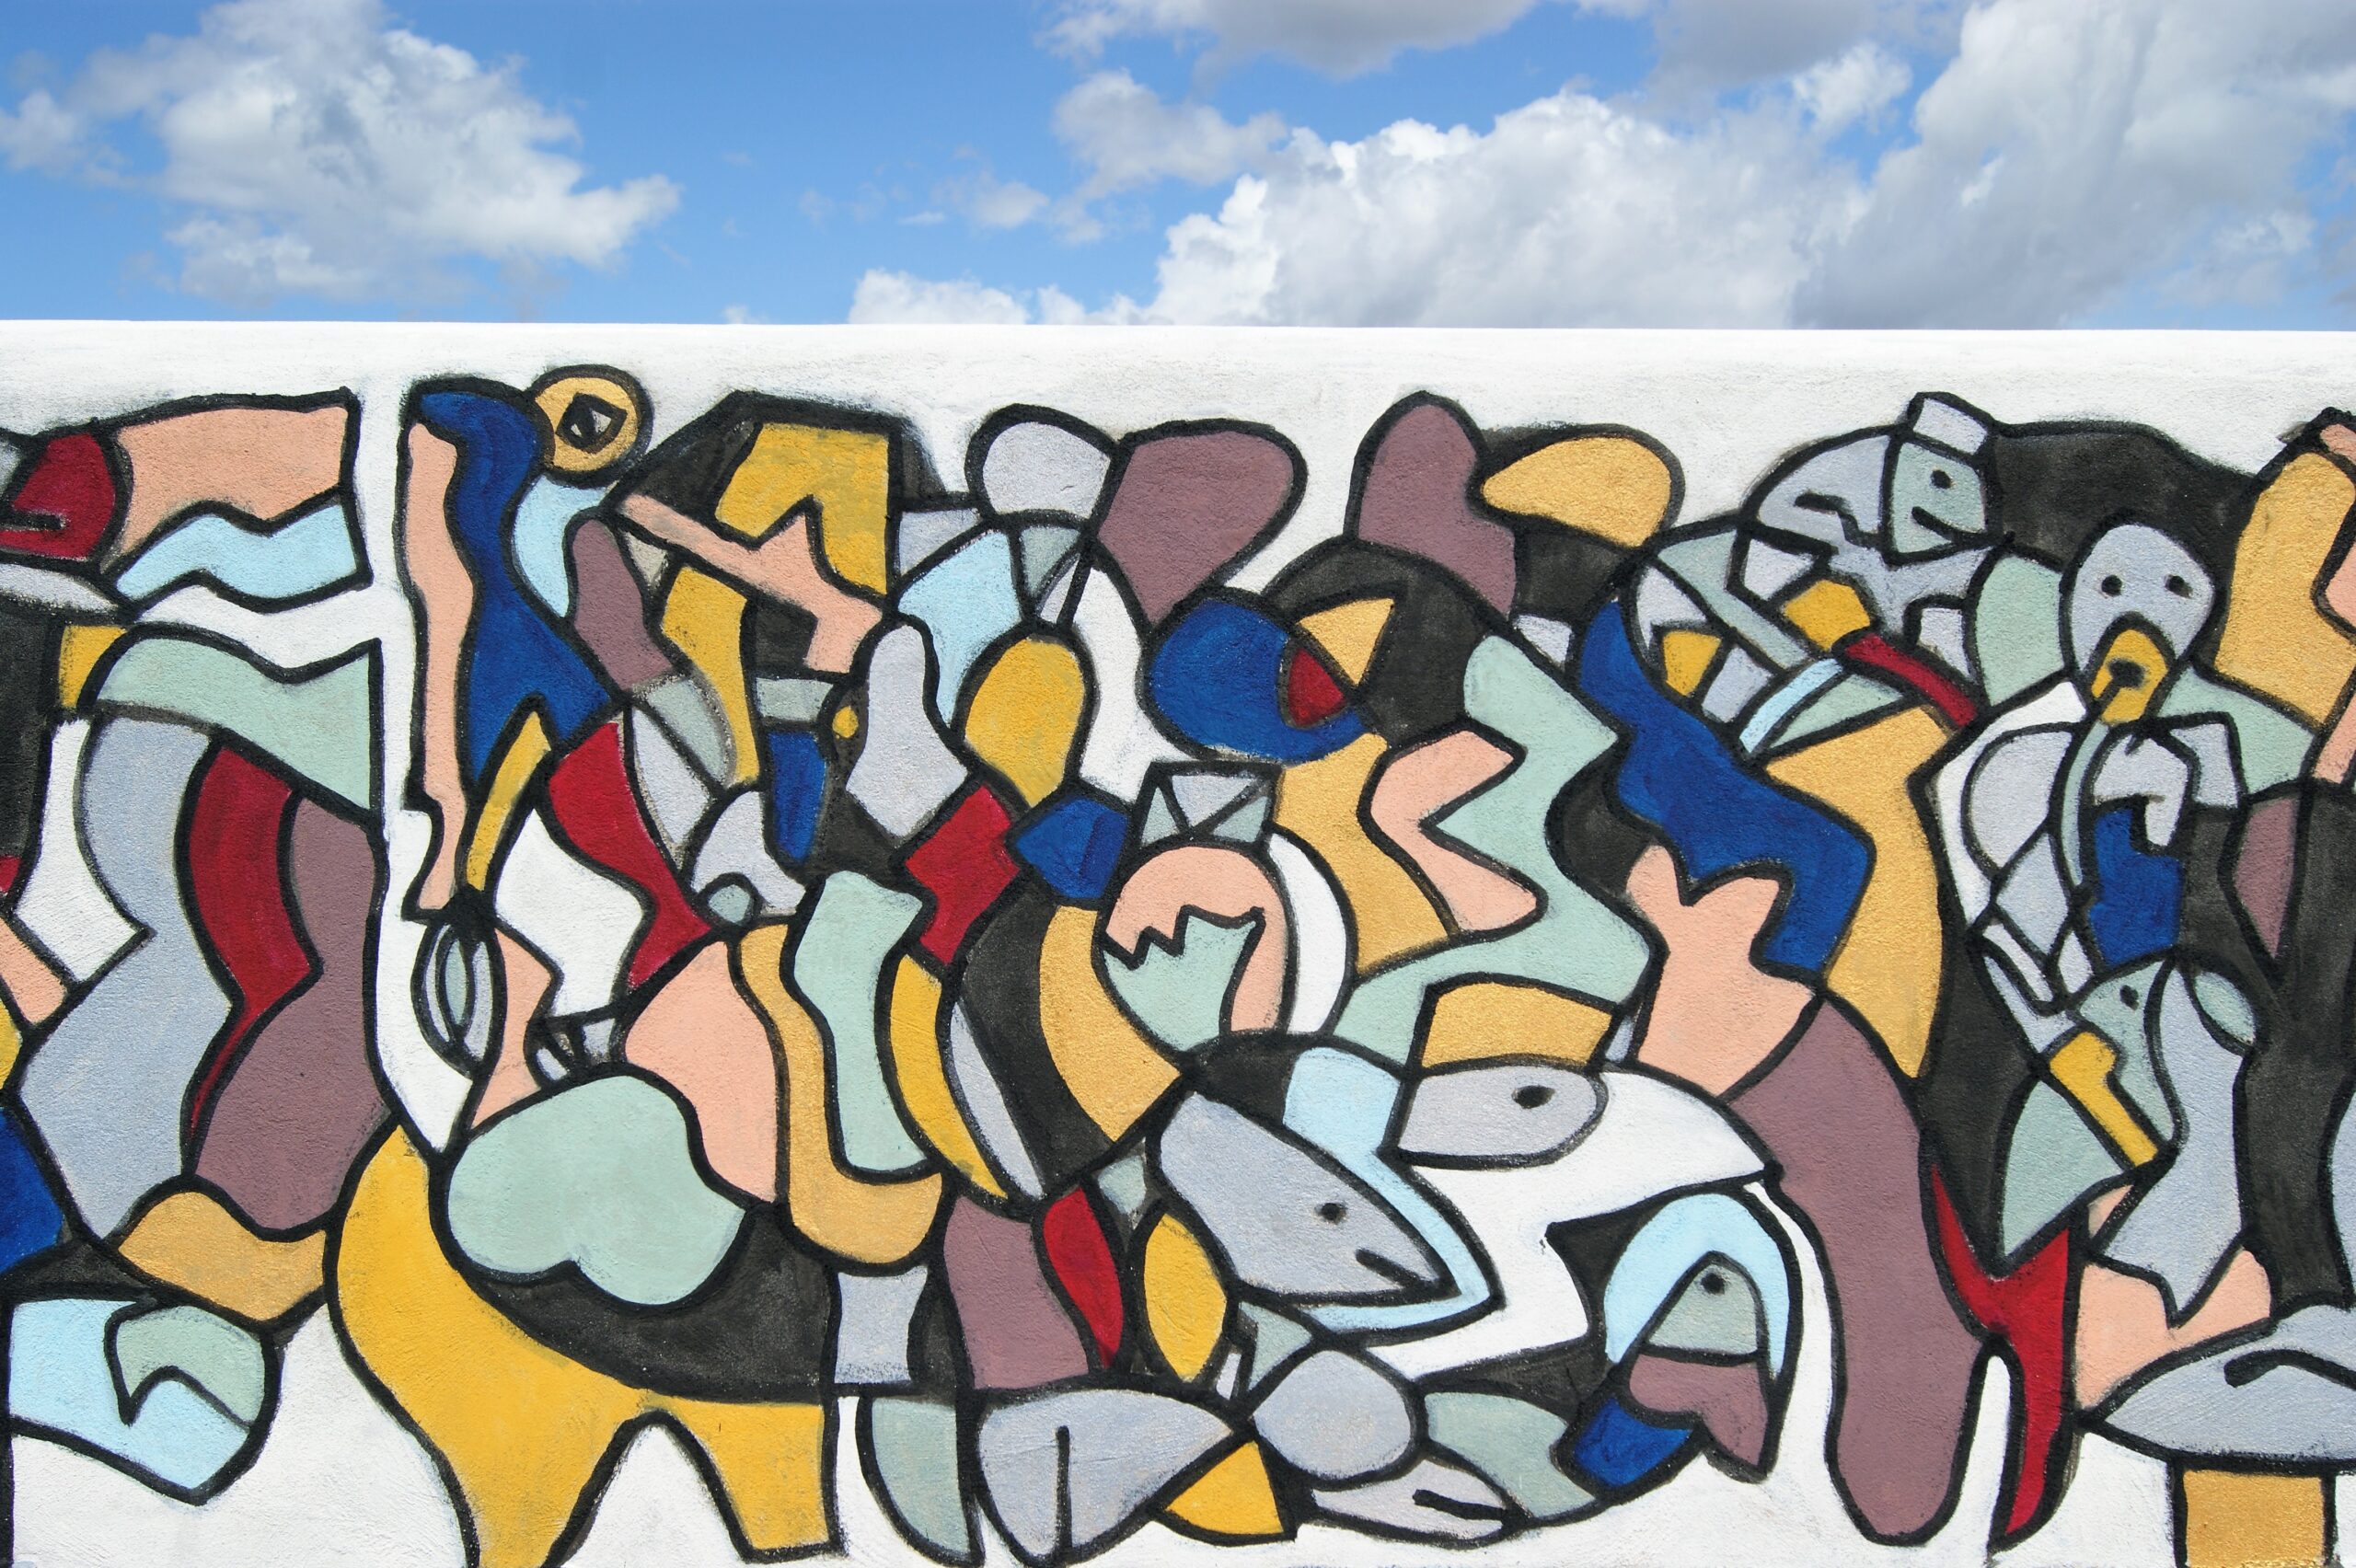 7 algorytmy pokoju mural sztuki współczesnej na sycylii cortile delle nevi